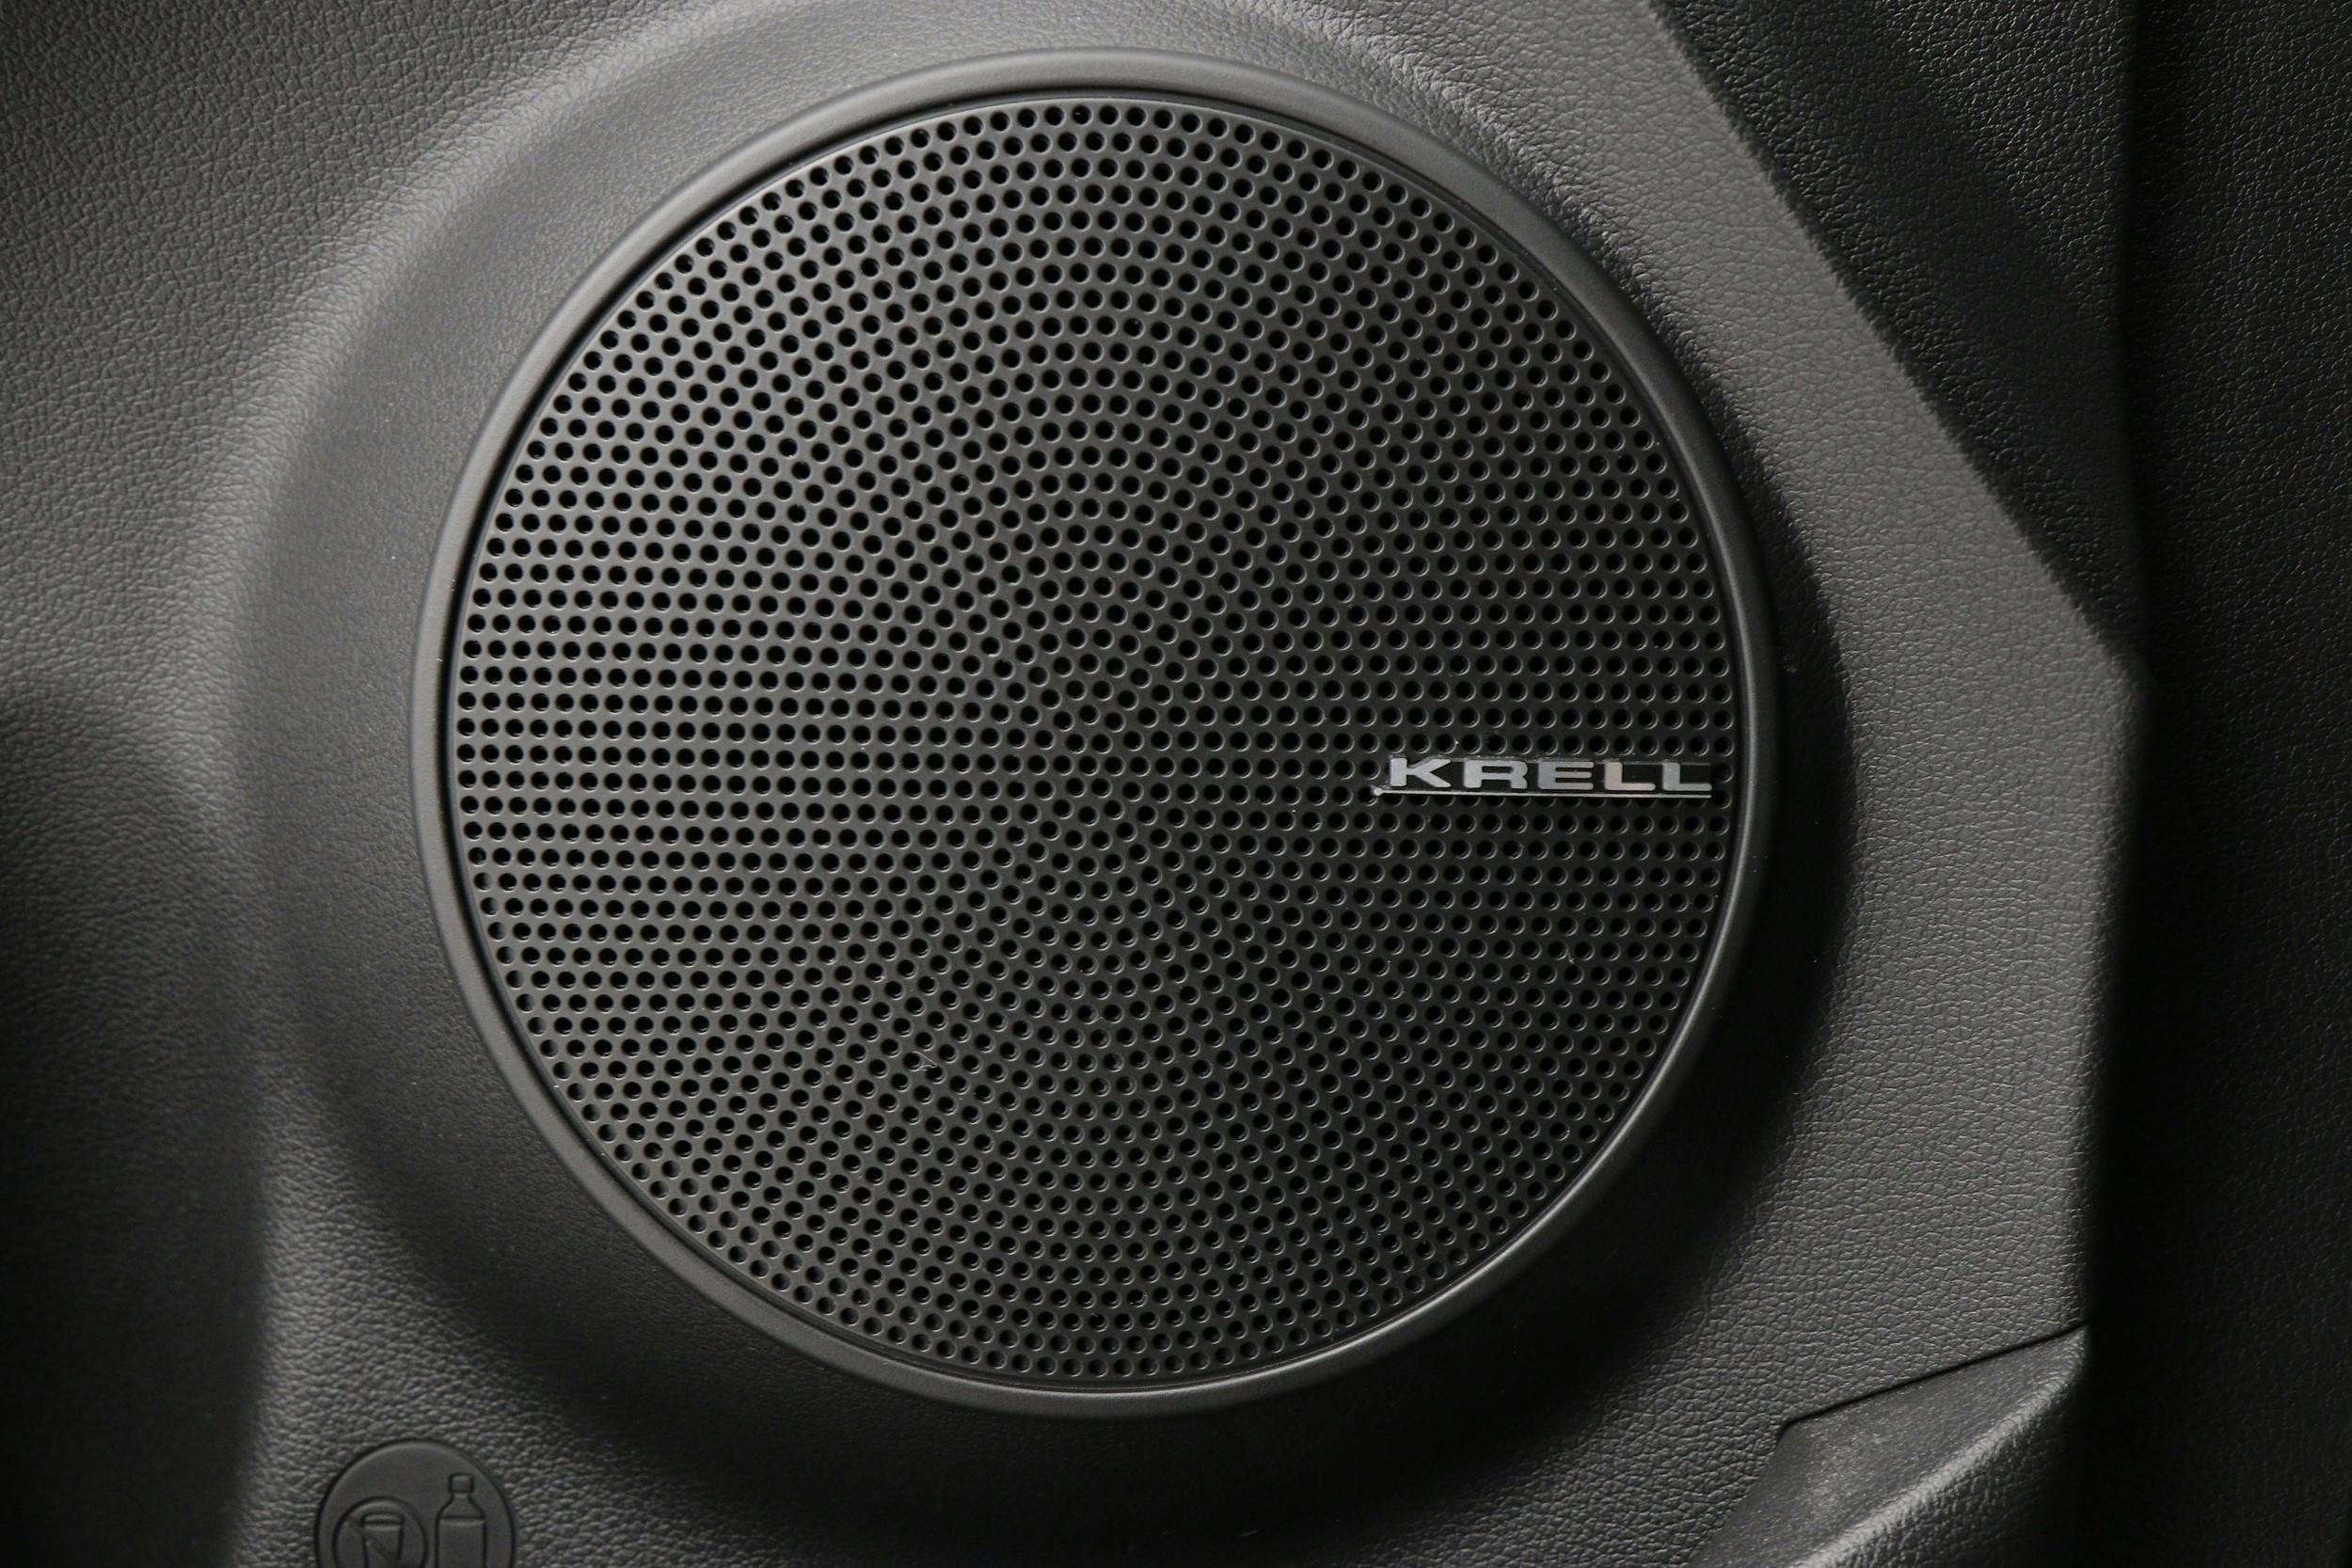 Uppgraderat ljudsystem med 8 högtalare inkl centerhögtalare och subwoofer, KRELL